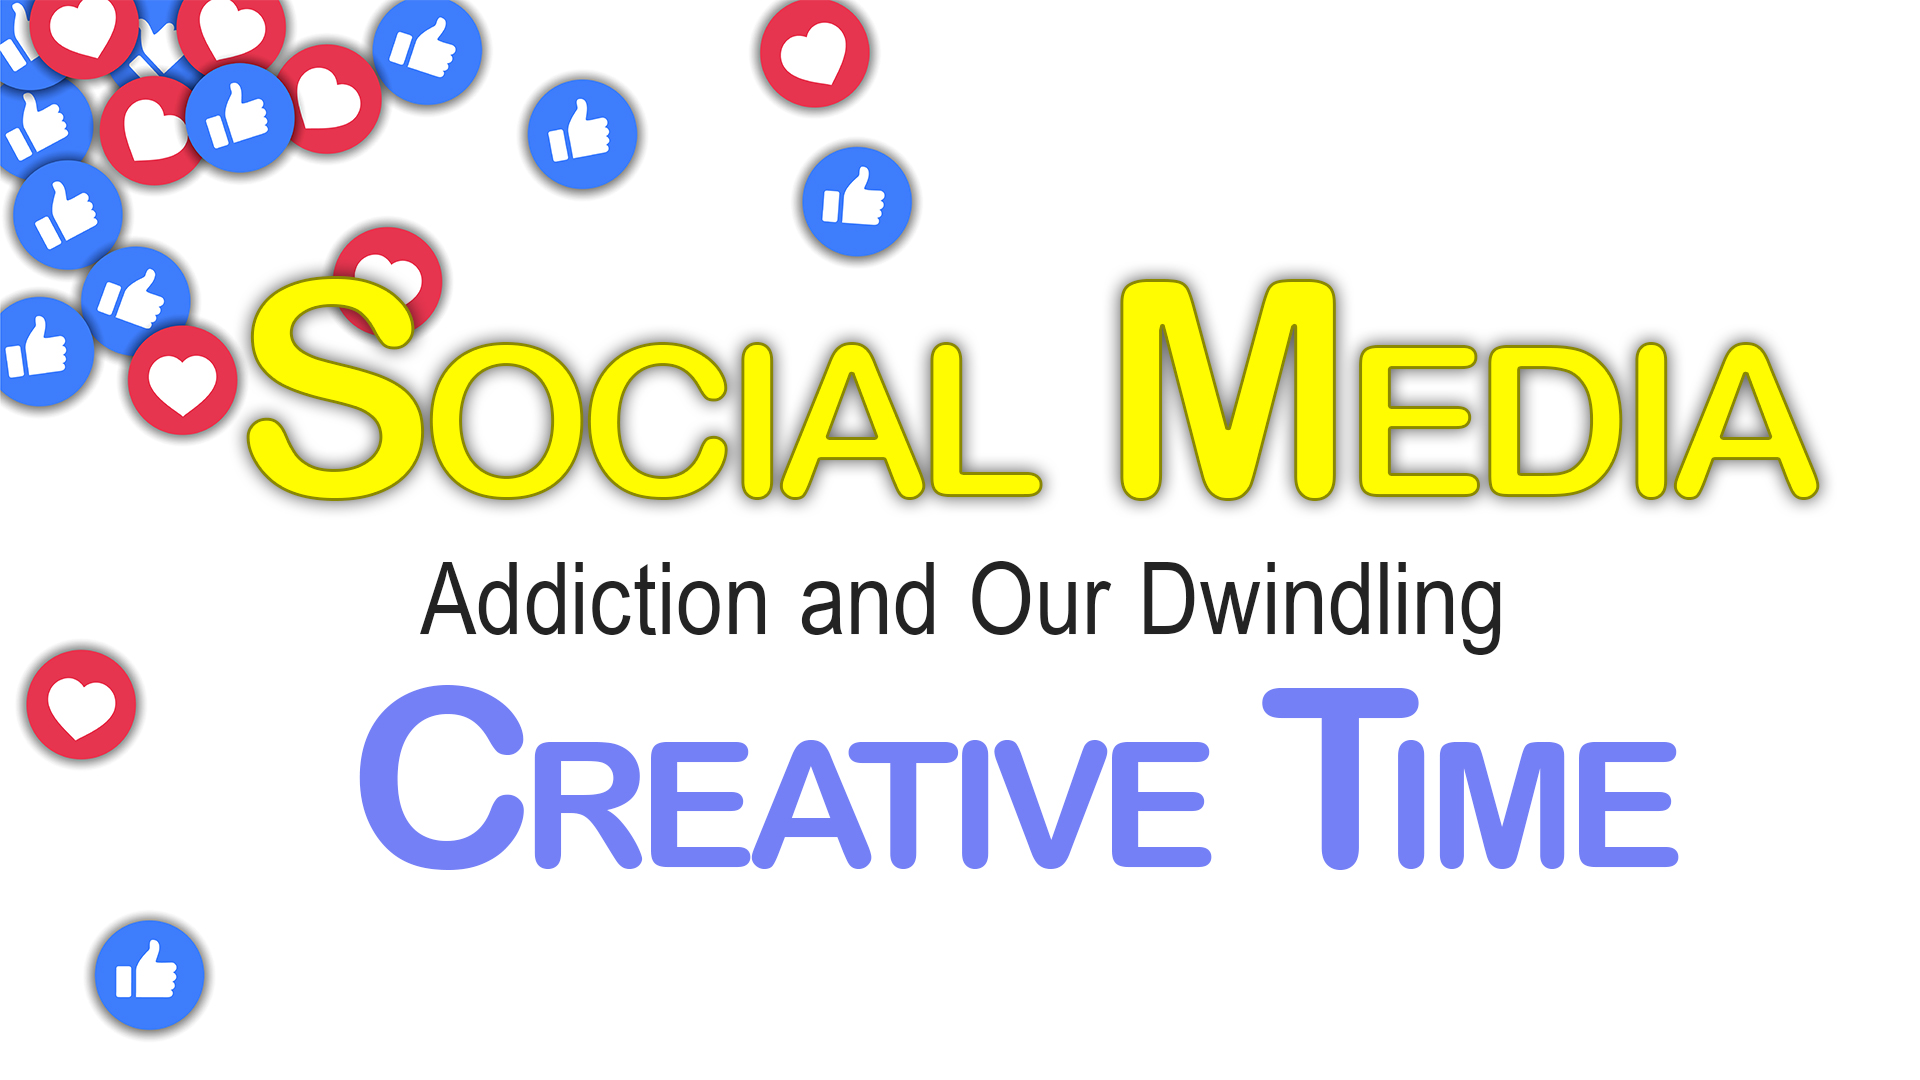 Our Social Media Addiction